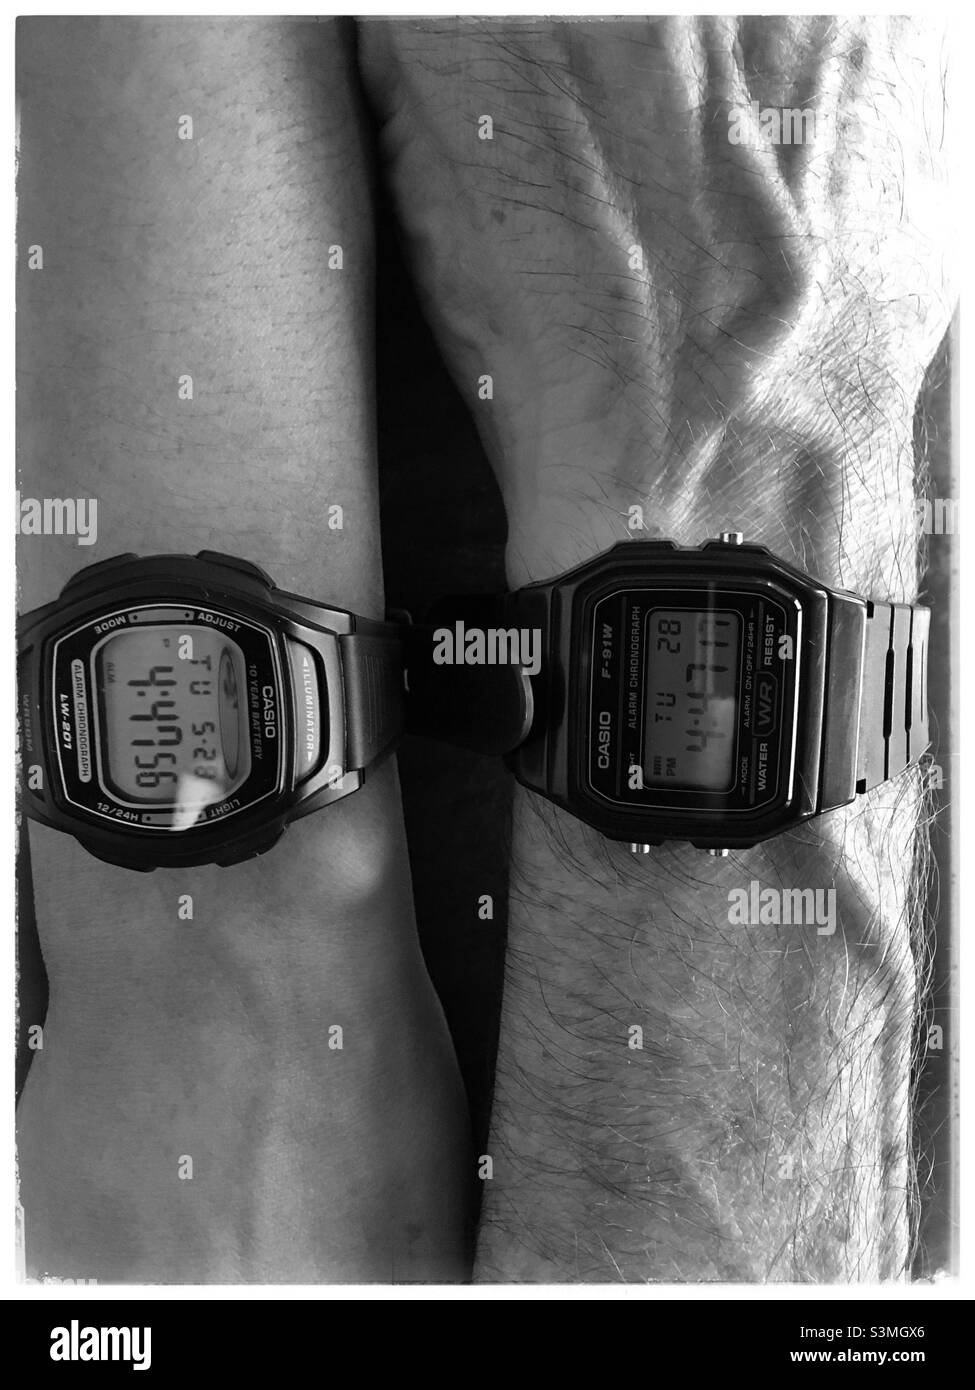 Paare, die Casio Uhren in Schwarz und Weiß tragen. Stockfoto